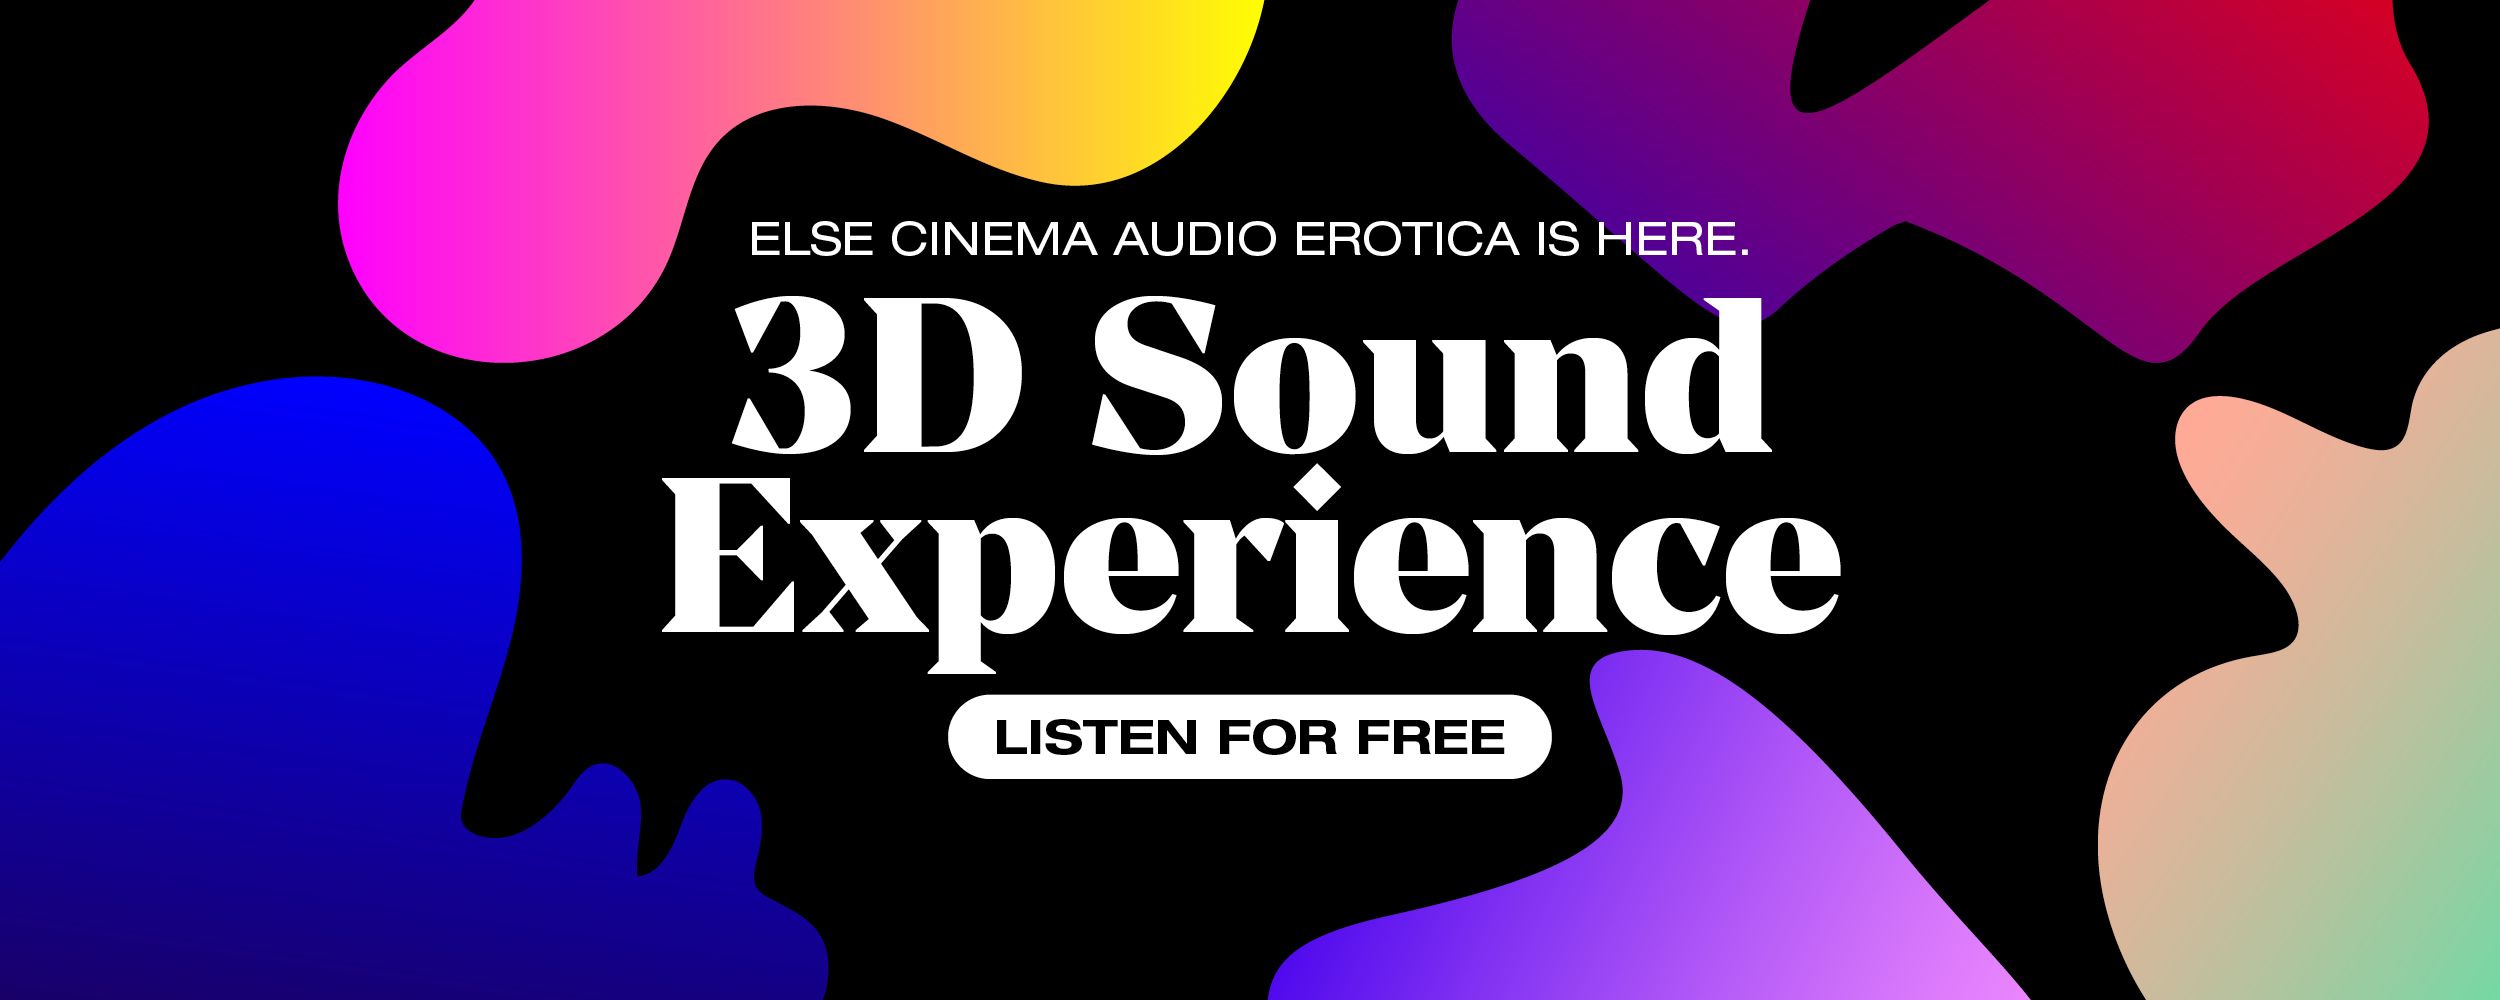 New Else Cinema Audio Porn Listen for Free